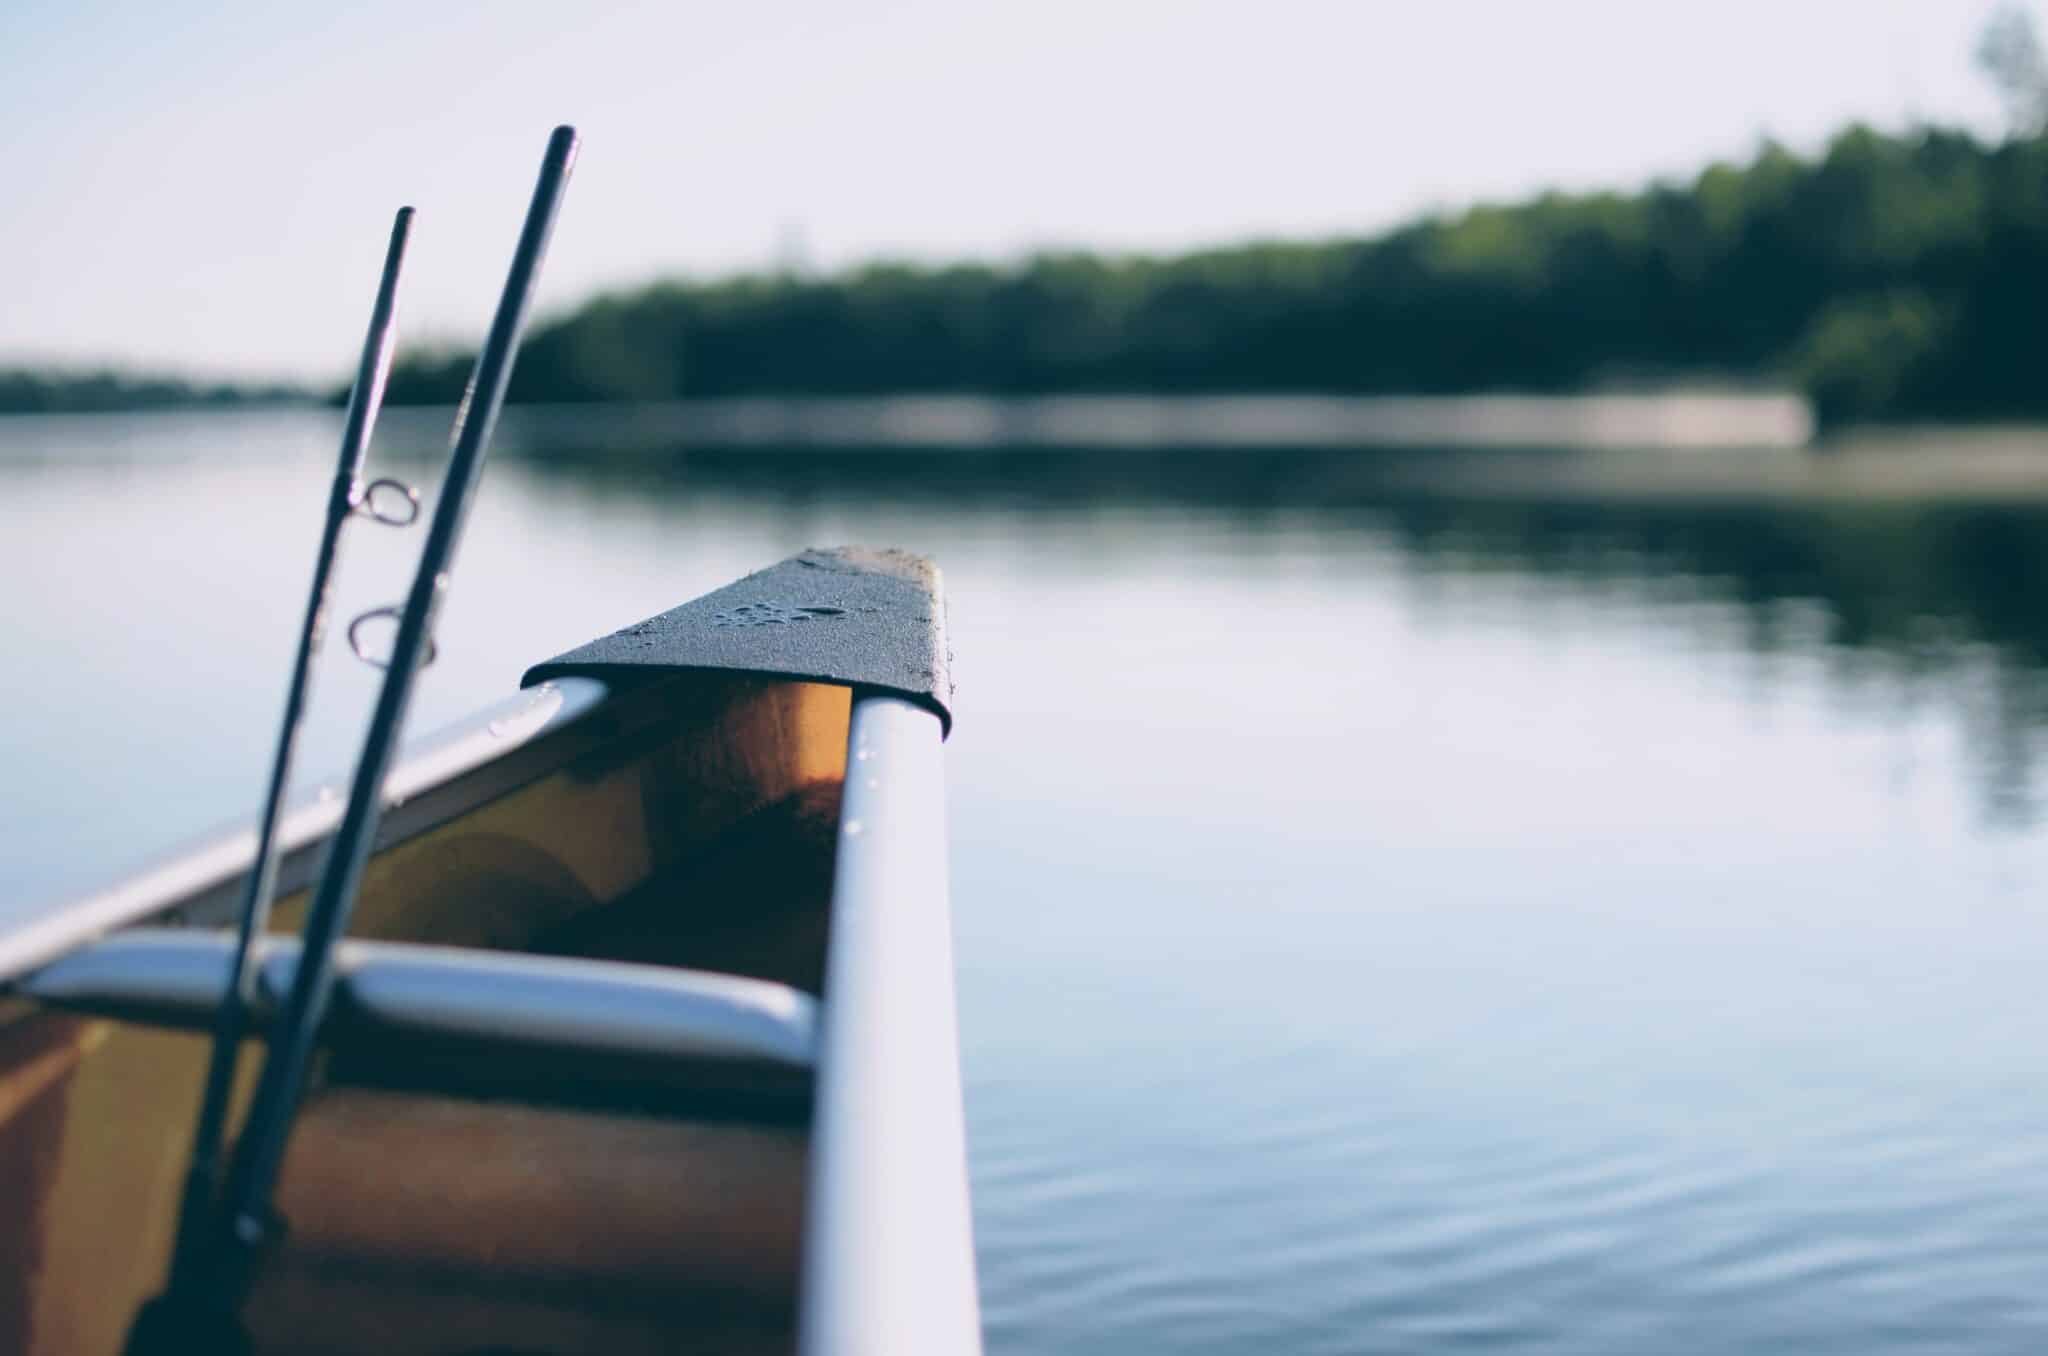 canoe on a lake | Photo by John Sekutowski on Unsplash